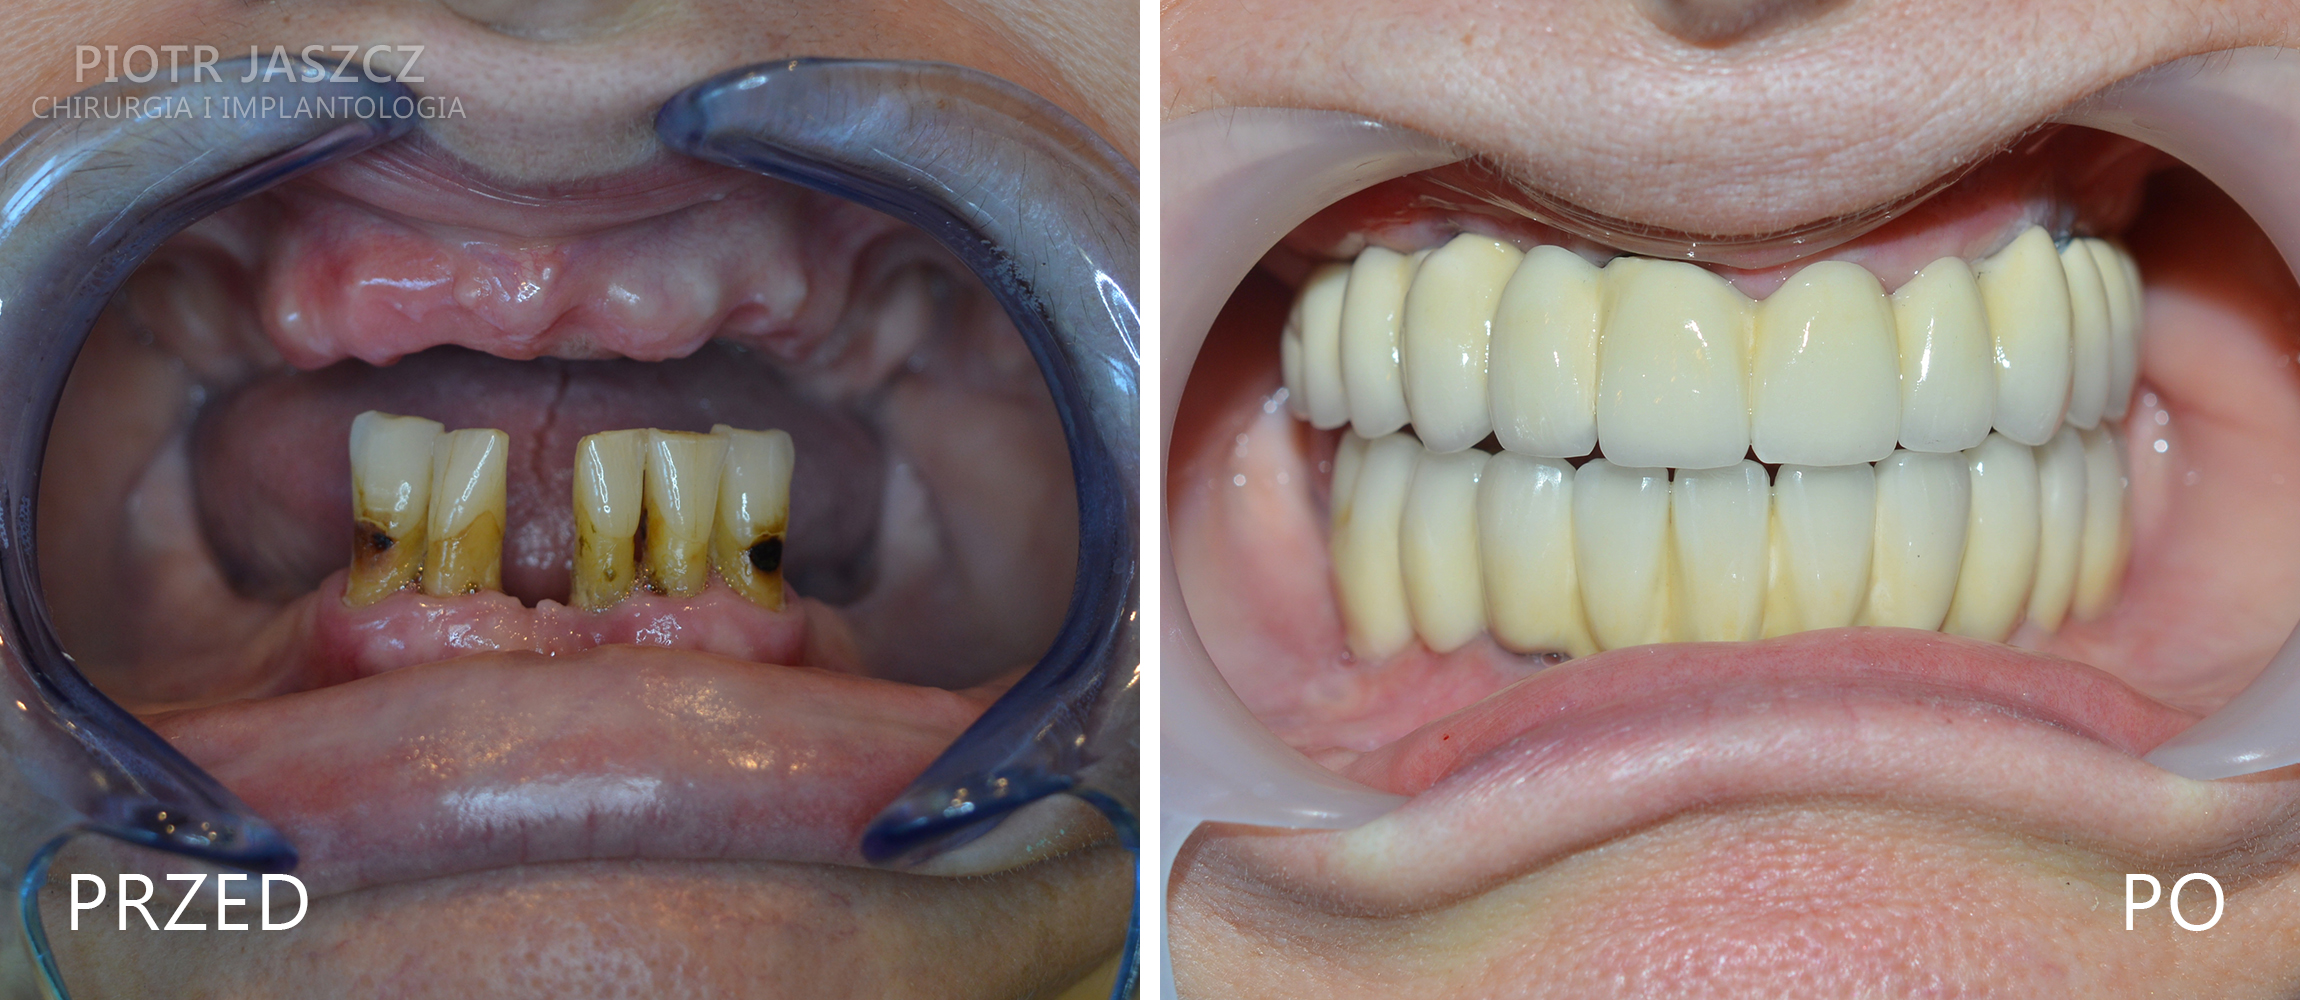 Usunięcie pięciu (ostatnich) zębów w żuchwie oraz wszczepienie 7 implantów w szczęce z jednoczesną regeneracją kości w zatokach szczękowych (prawej i lewej) oraz 5 implantów w żuchwie. Widoczny most ostateczny w szczęce oparty na 7 implantach oraz most ostateczny w żuchwie oparty na 5 implantach.